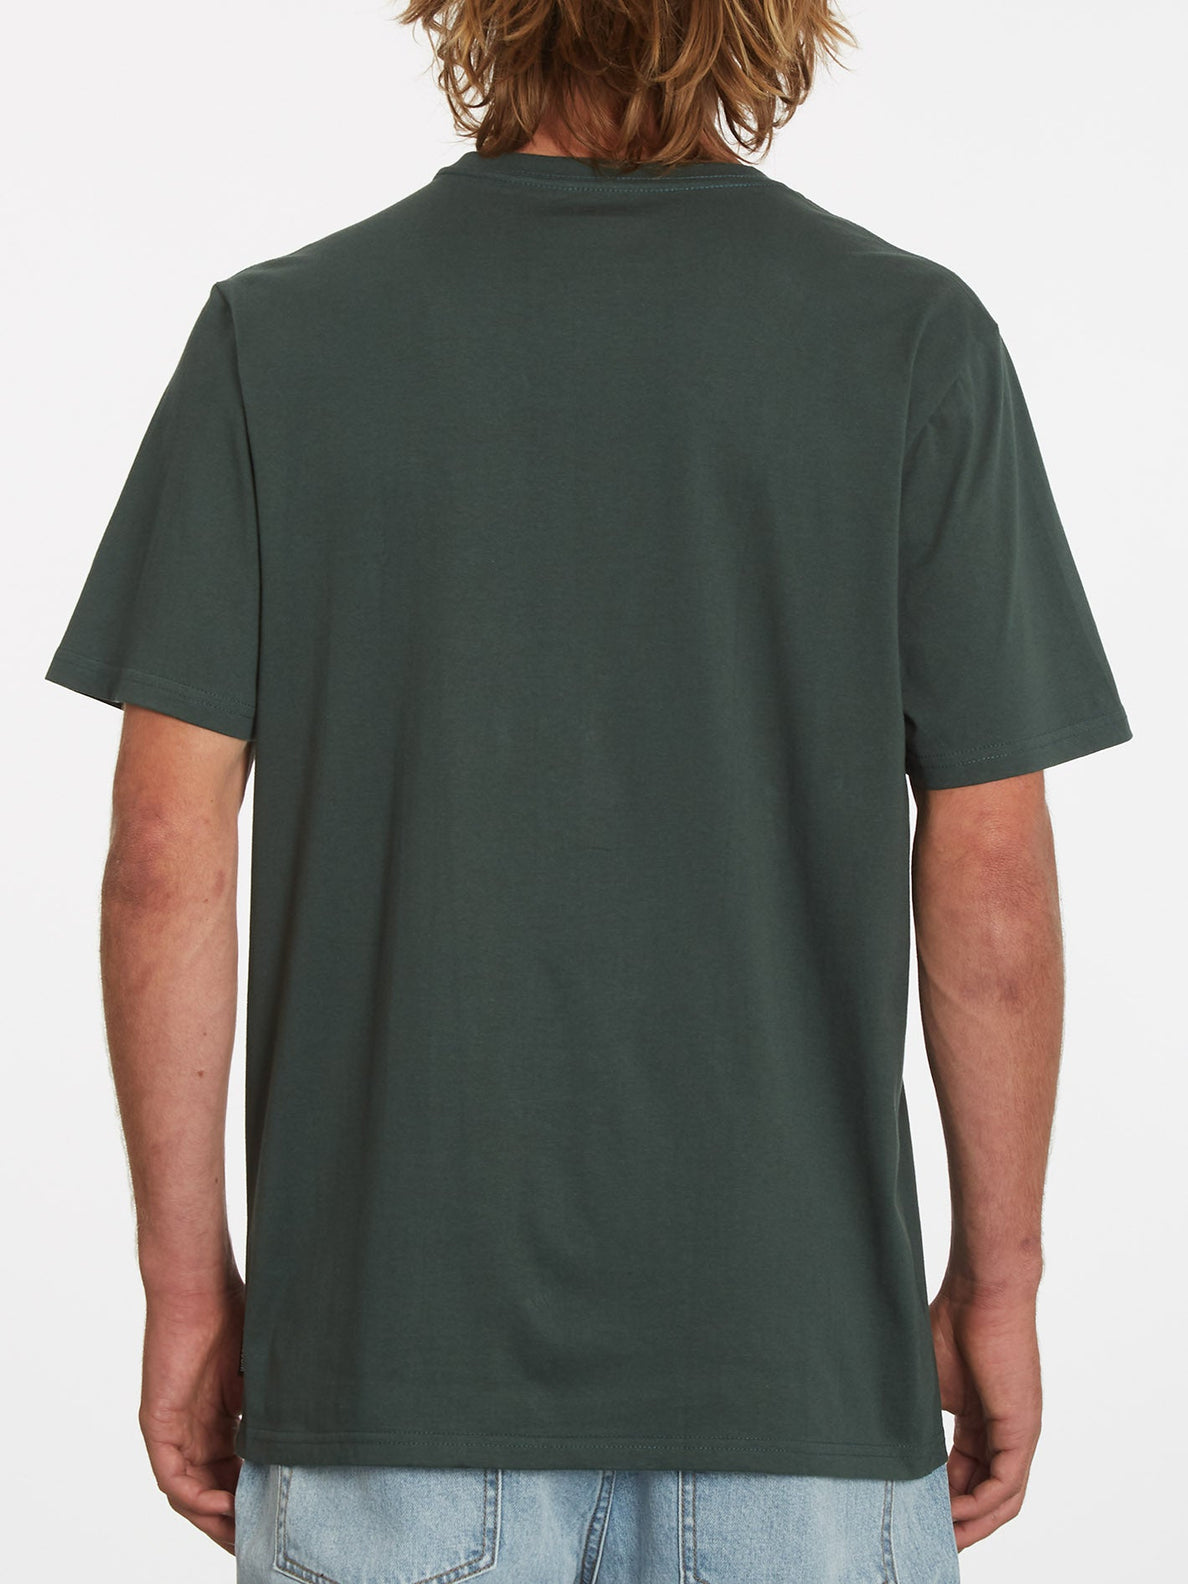 Vaderetro 2 T-shirt - CEDAR GREEN (A5232207_CDG) [B]